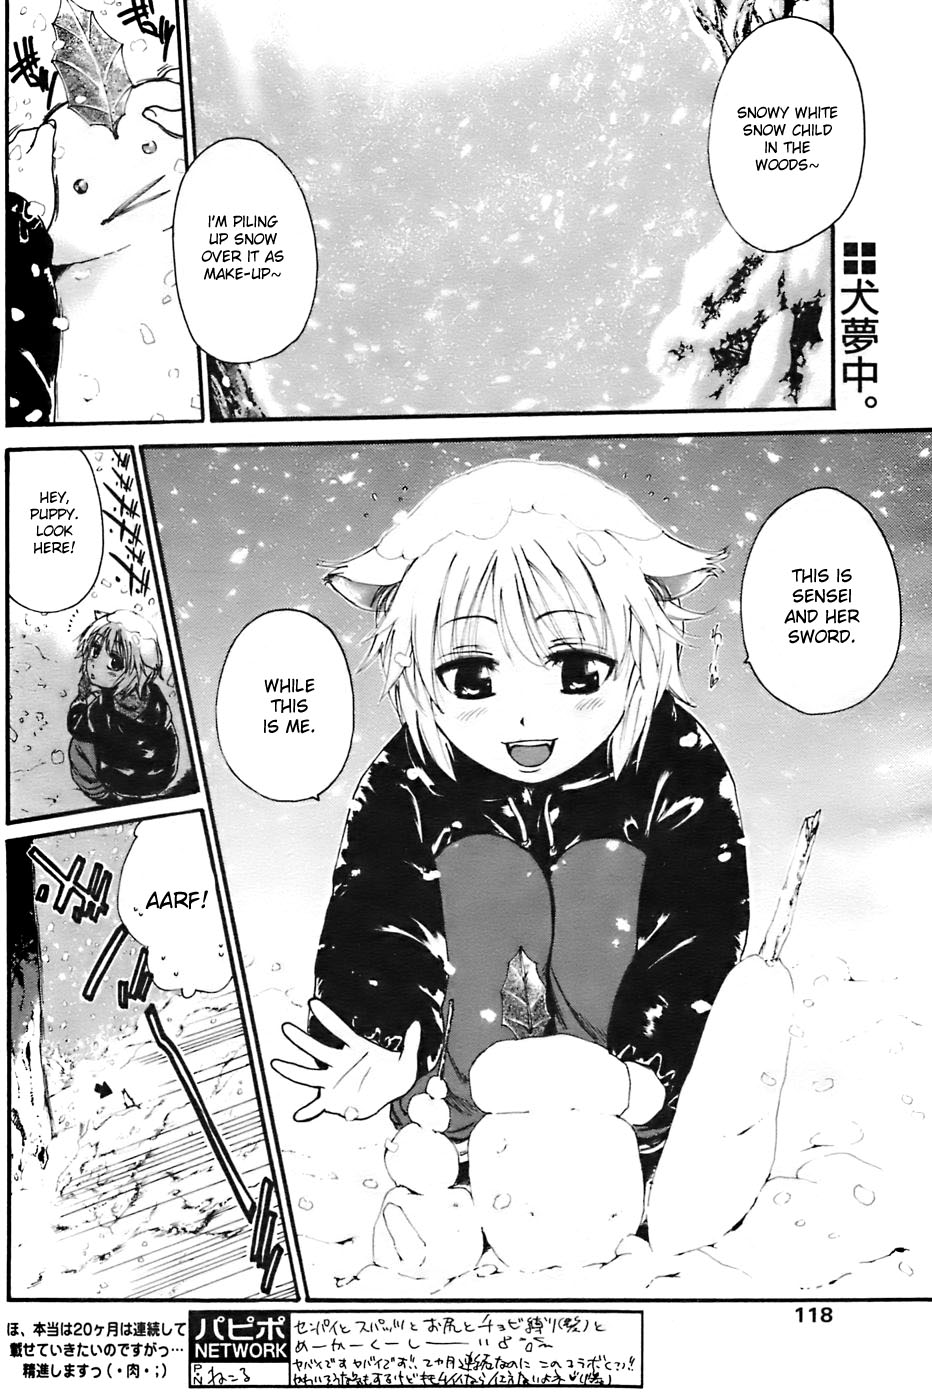 [Kunimitsu Suwa] Kyou no Wanko day 2 [ENG] page 2 full